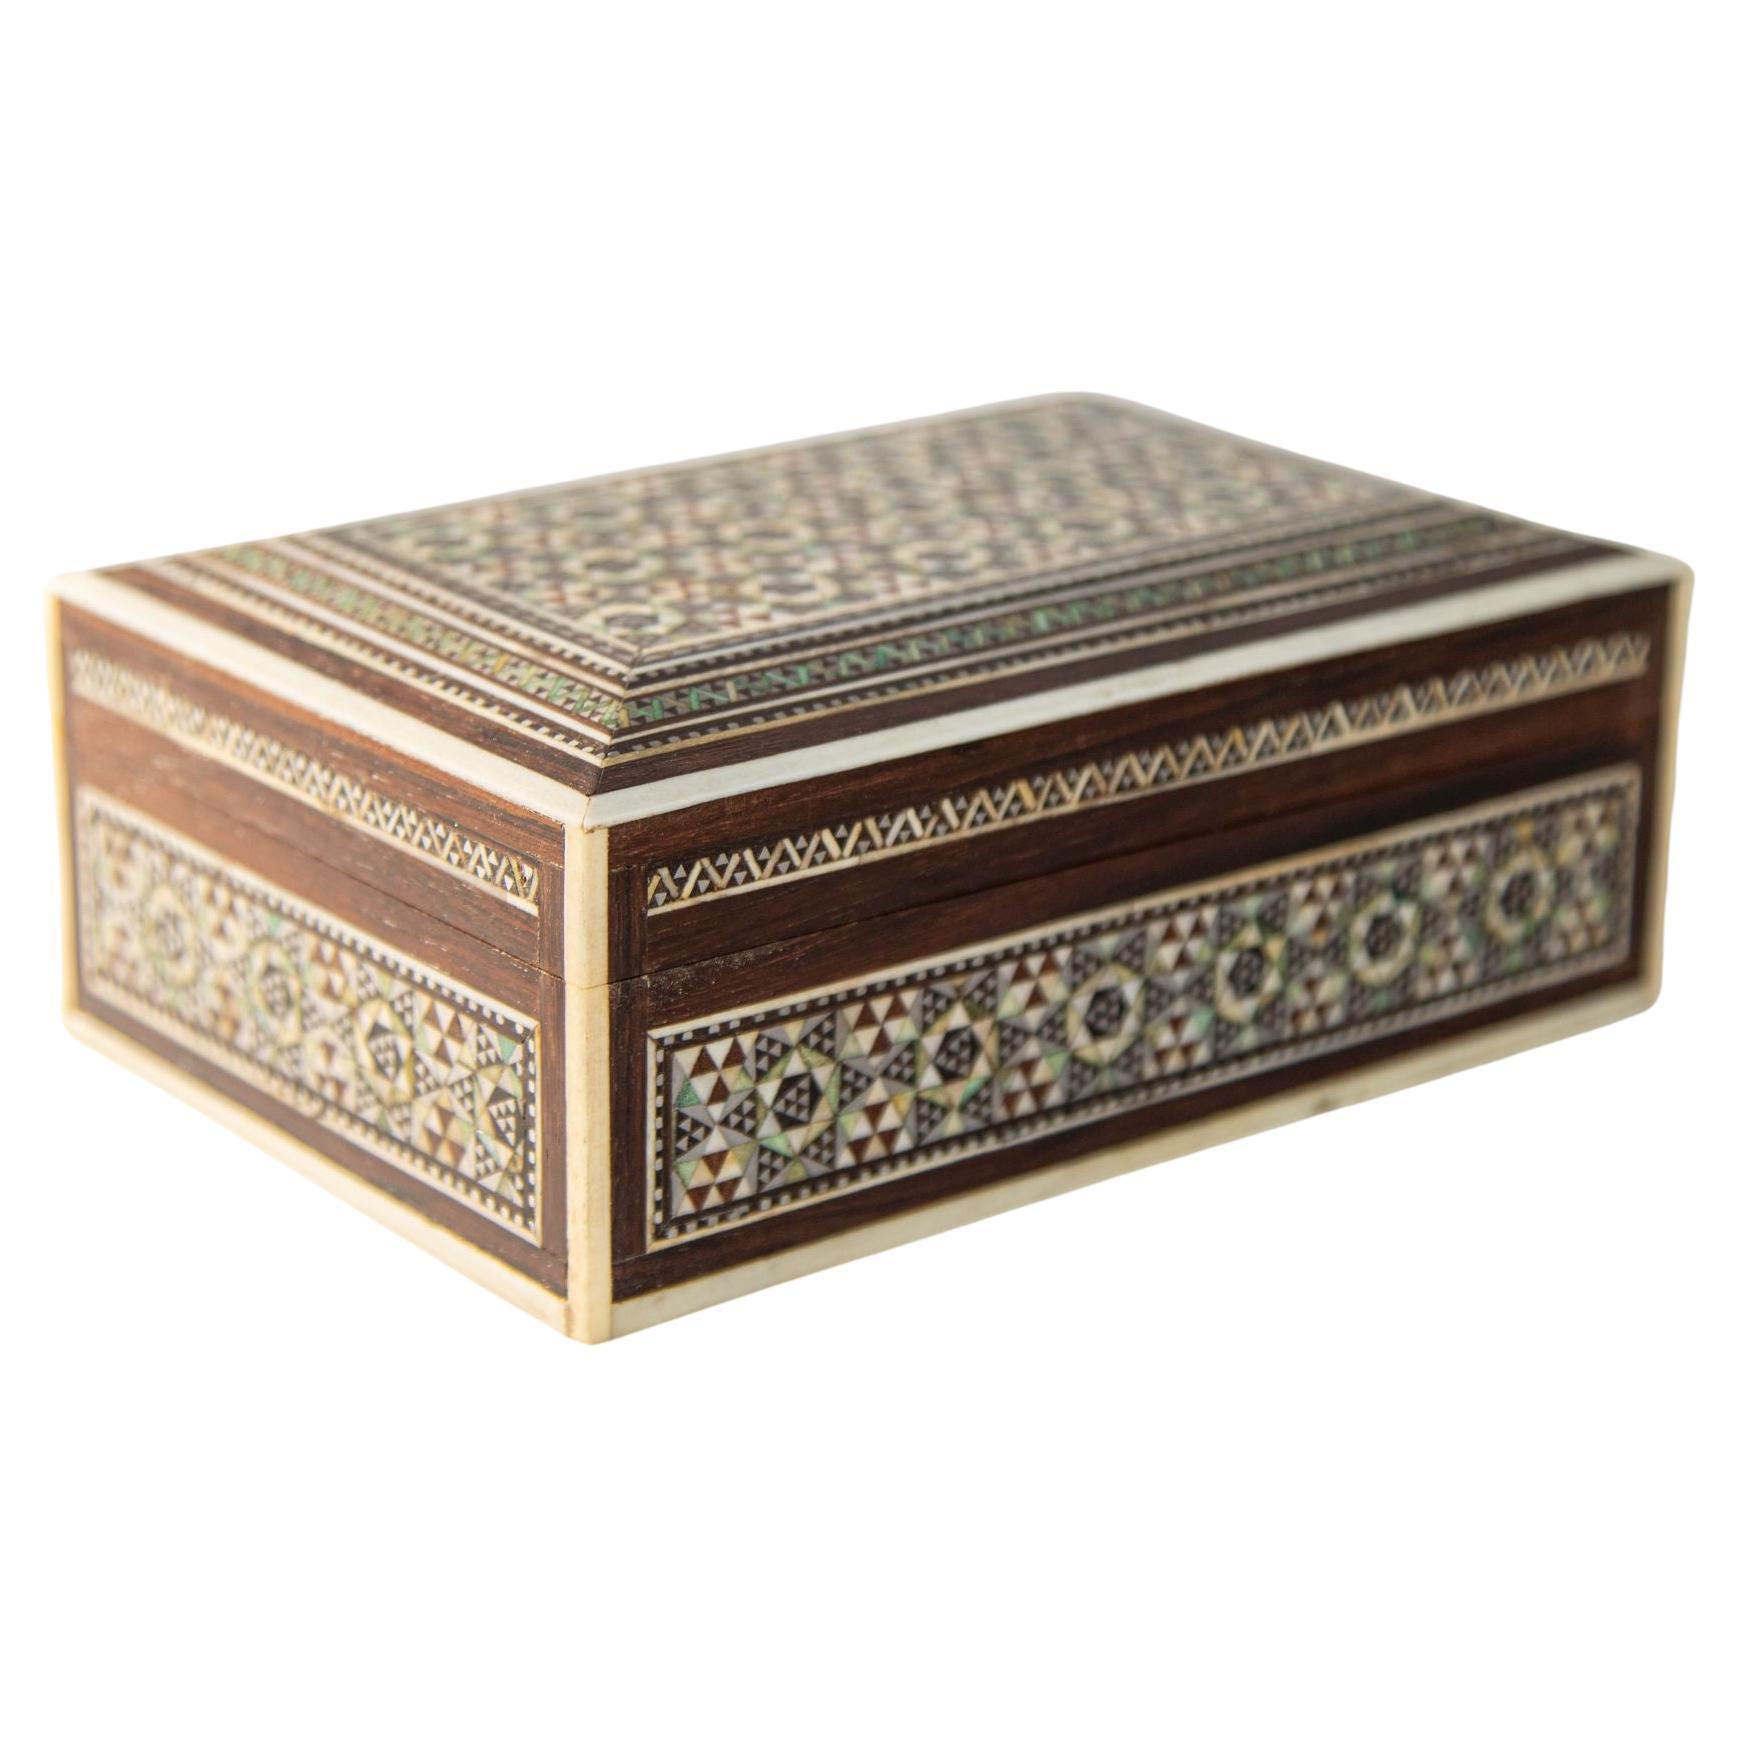 1940er Jahre Perlmutt Intarsien dekorative nahöstliche islamische Box